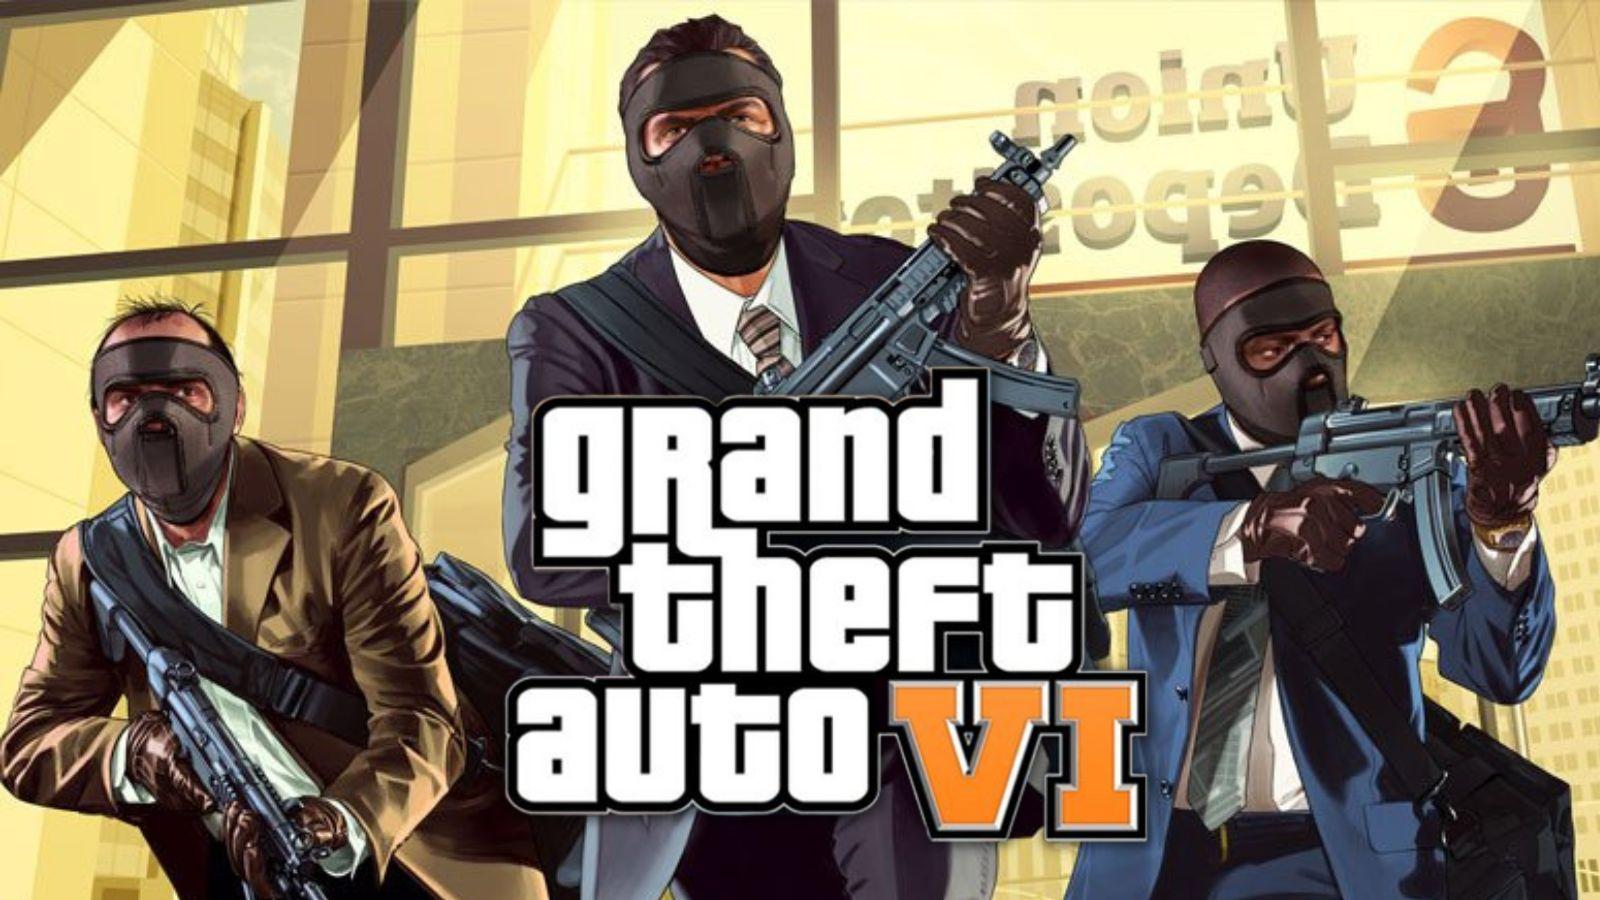 GTA 6 leak is 'biggest in video game history